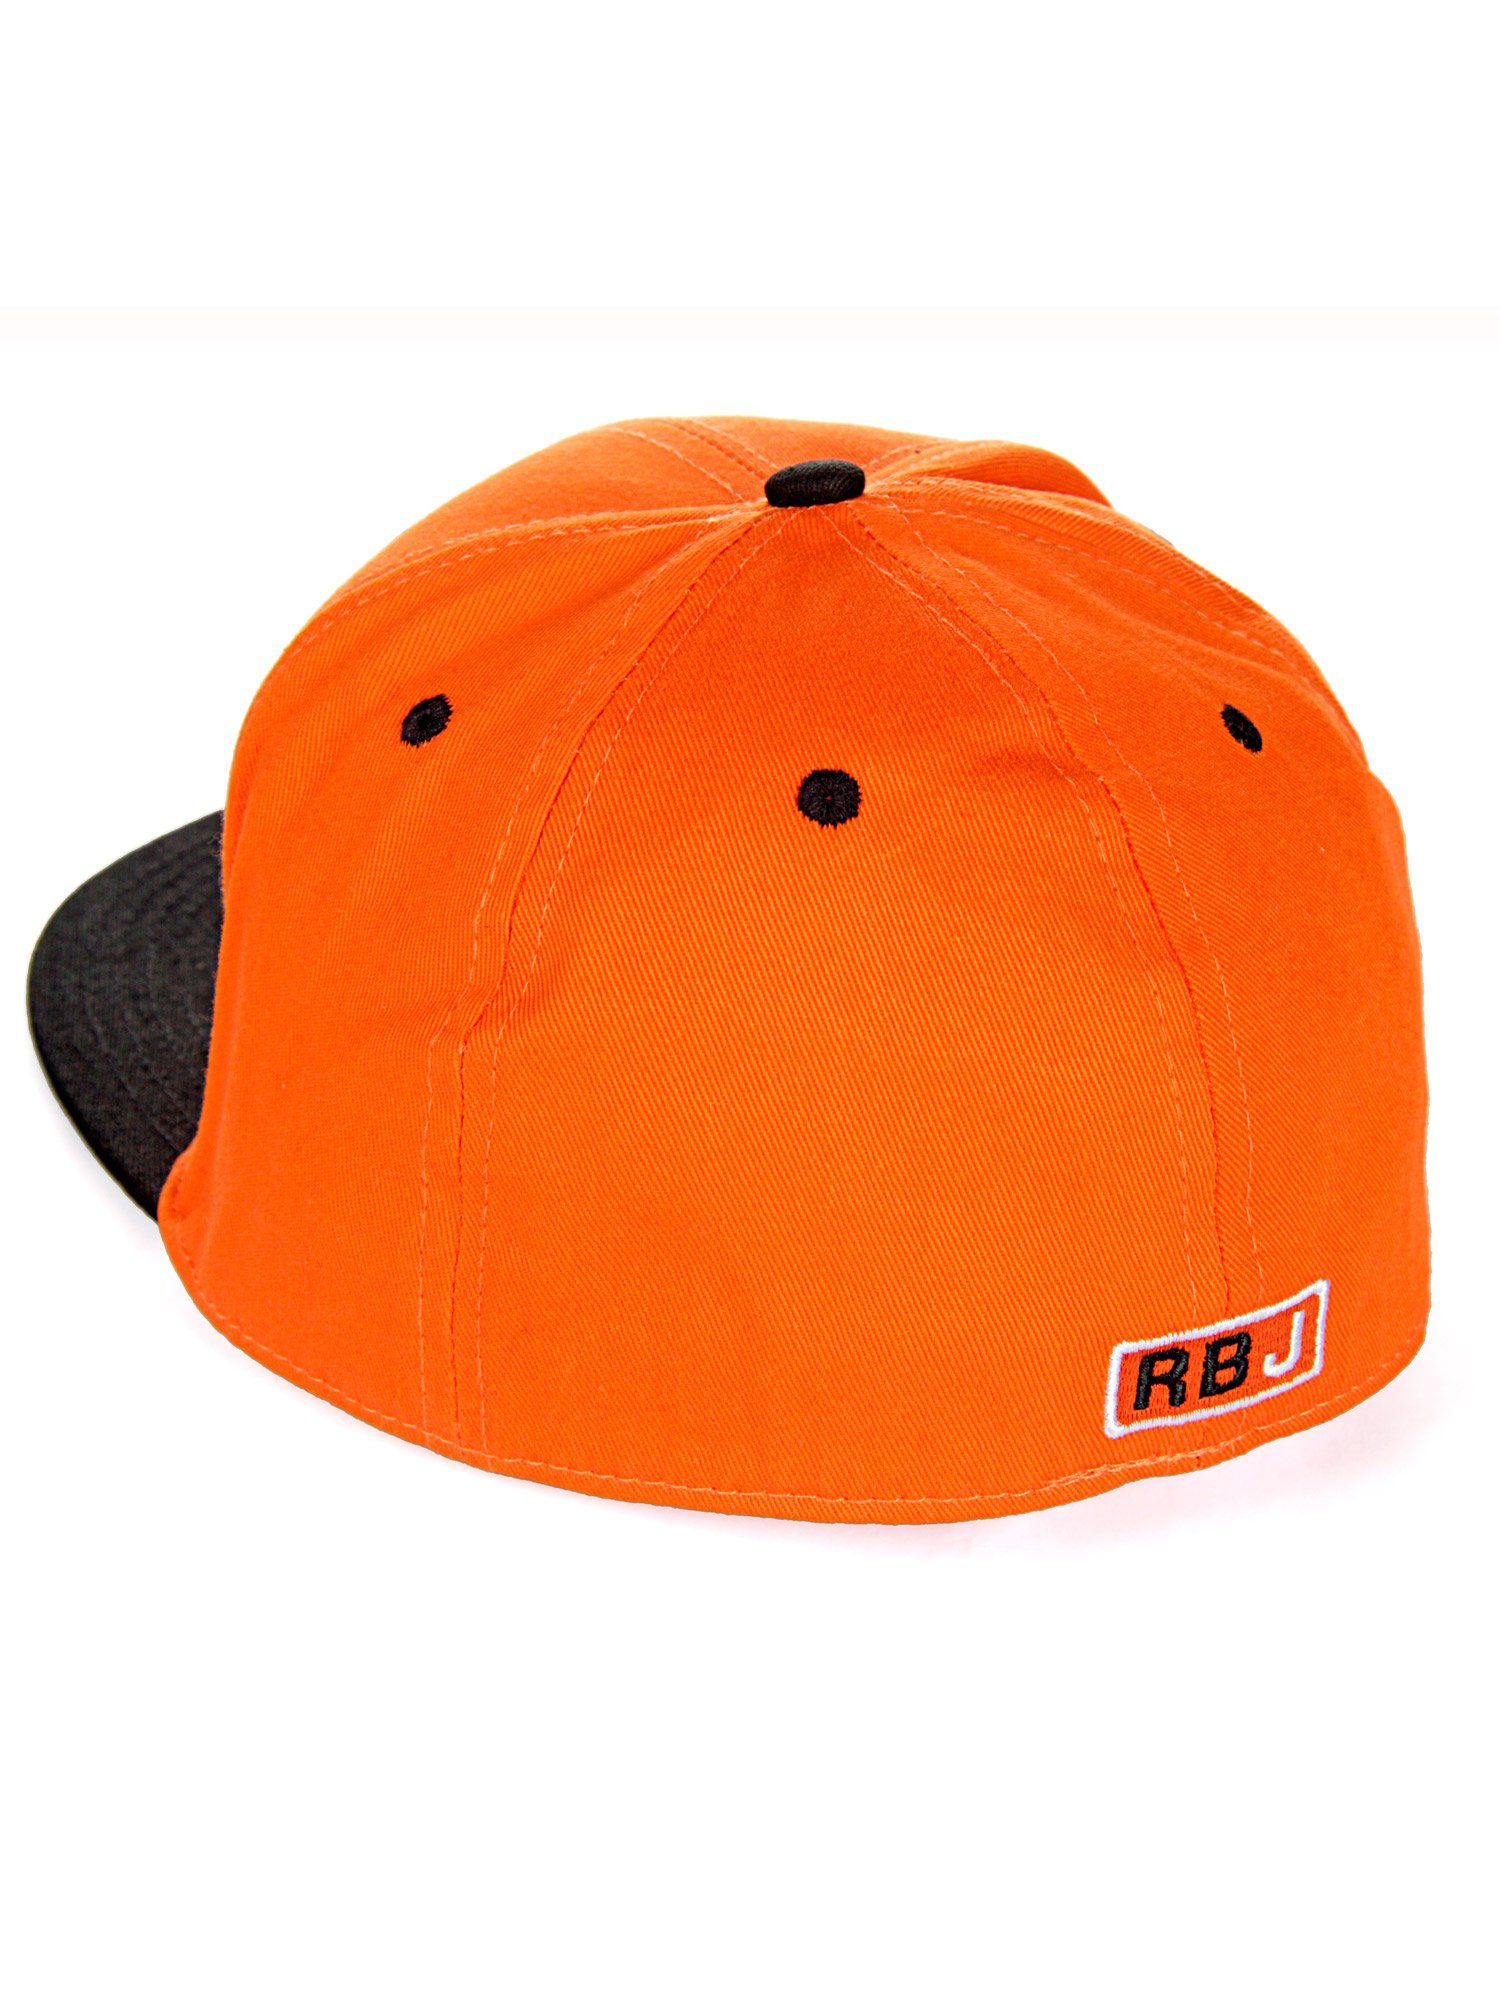 Baseball Cap kontrastfarbigem mit Schirm RedBridge Durham orange-schwarz